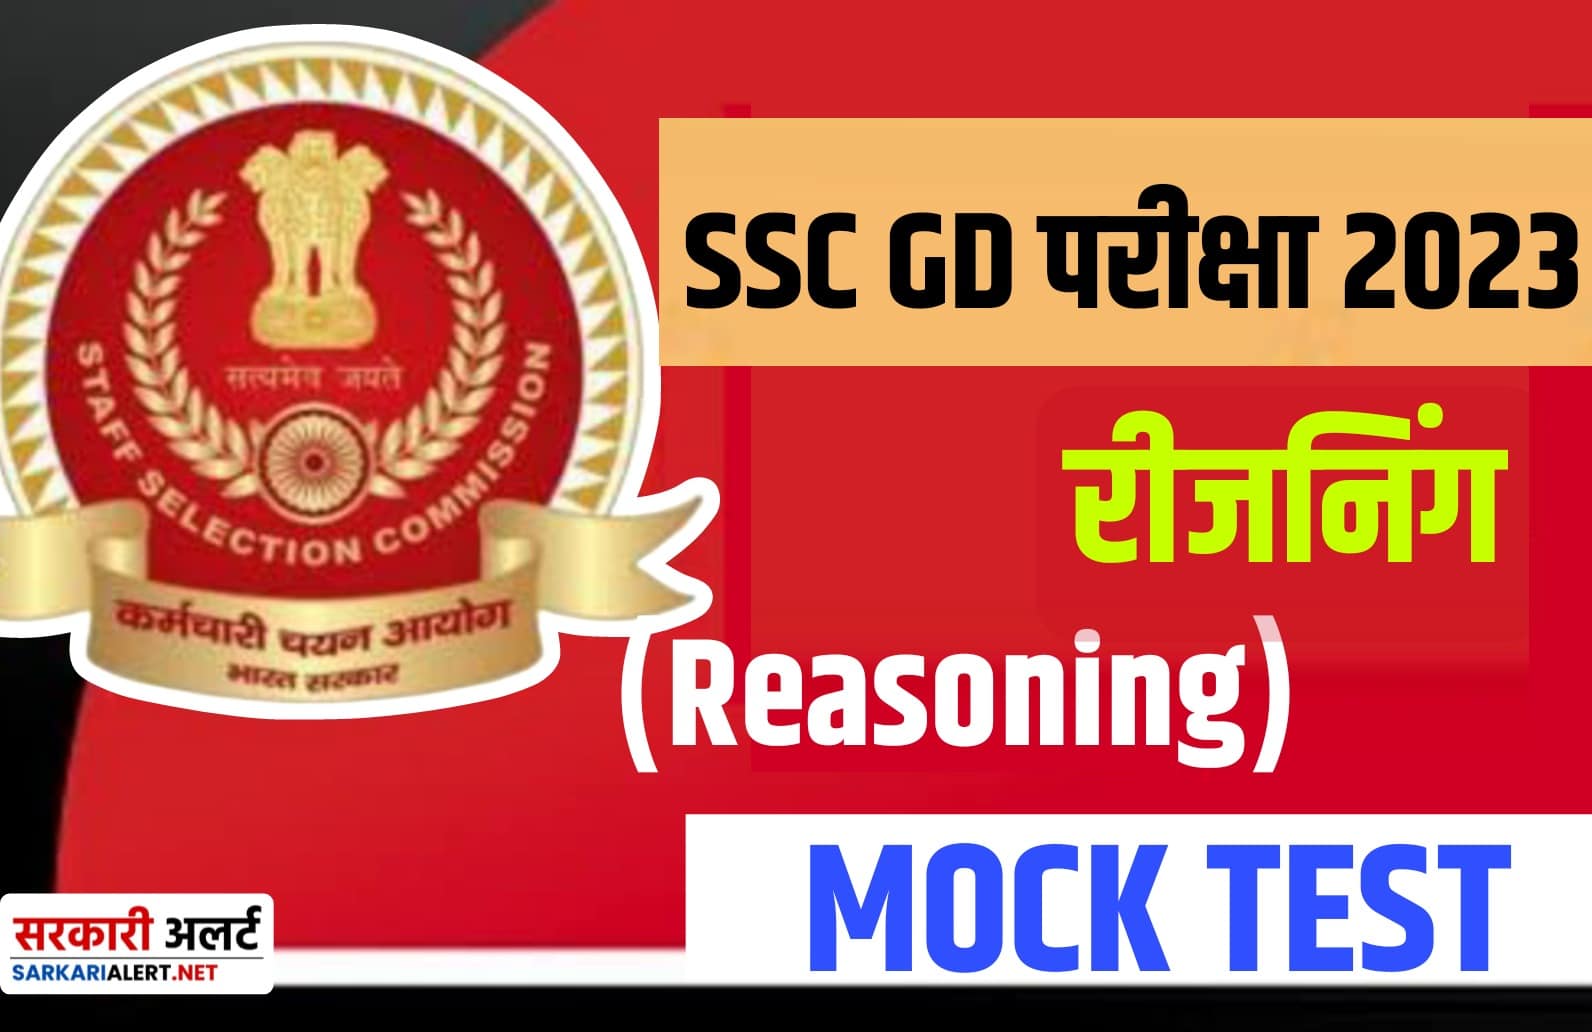 SSC GD Exam 2023 Reasoning MCQ : एसएससी जीडी परीक्षा हेतु रीजनिंग से जुड़ें मुख्य प्रश्न